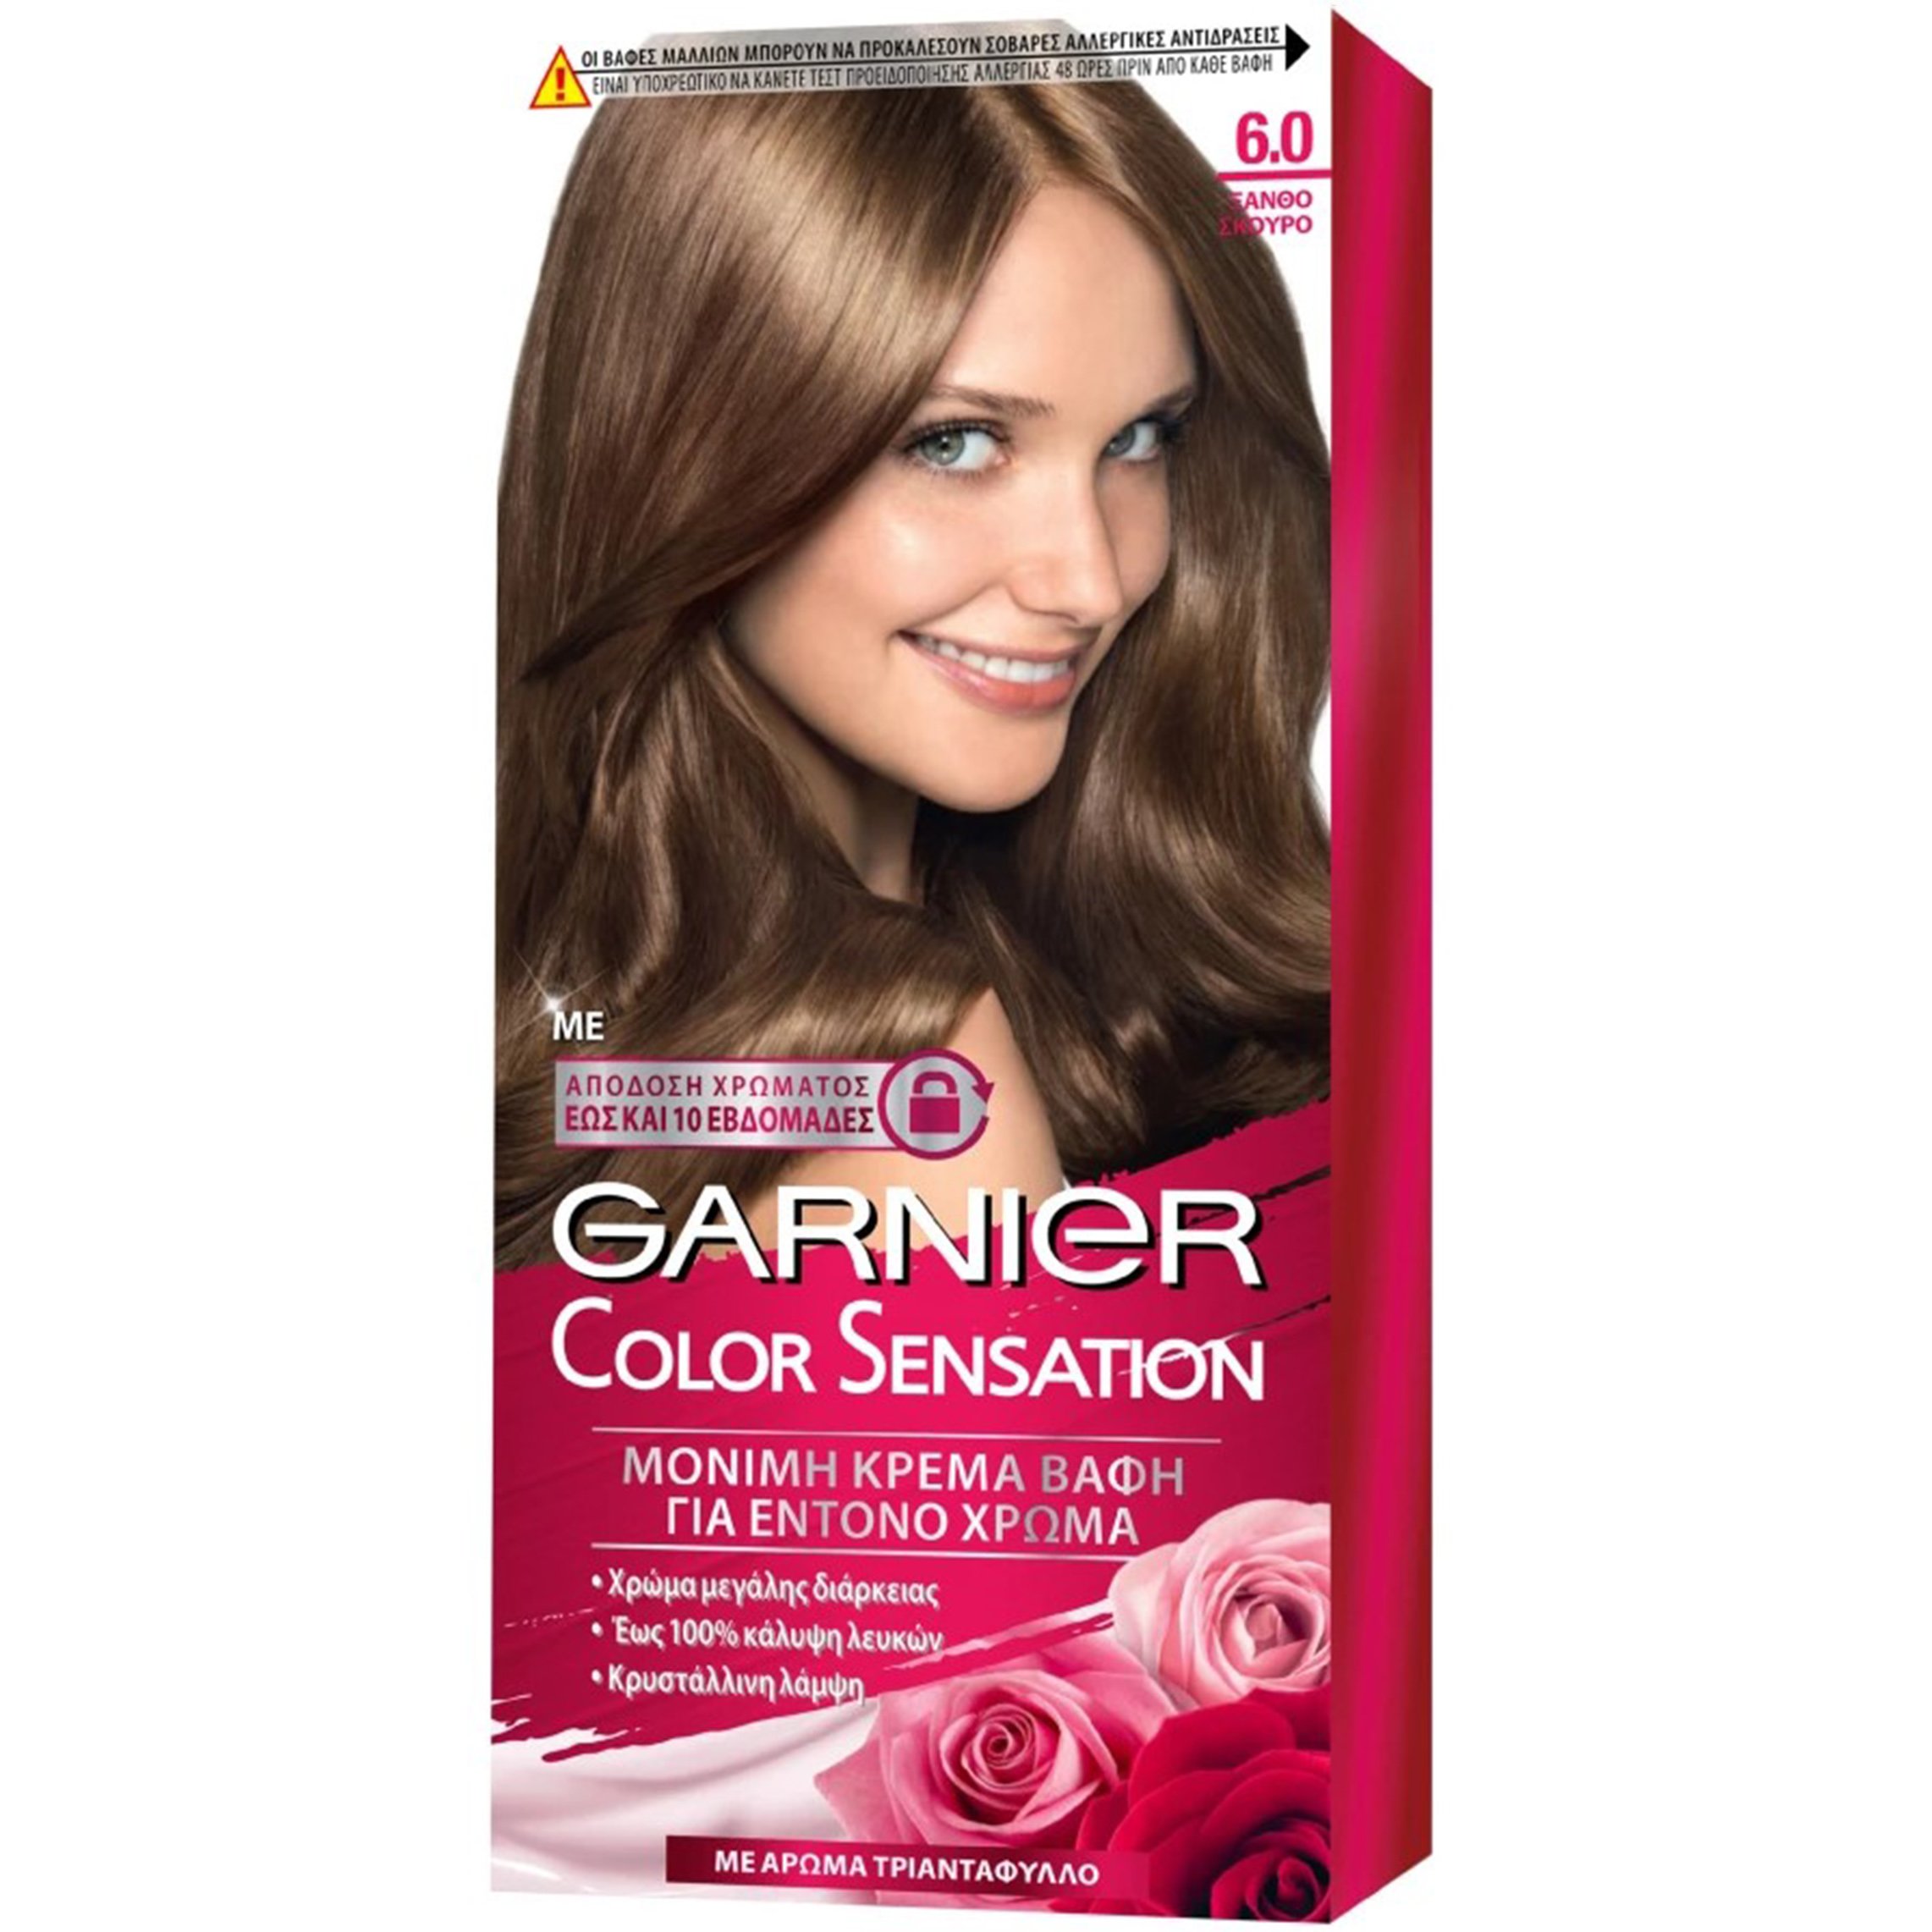 Garnier Color Sensation Permanent Hair Color Kit Μόνιμη Κρέμα Βαφή Μαλλιών με Άρωμα Τριαντάφυλλο 1 Τεμάχιο – 6.0 Ξανθό Σκούρο